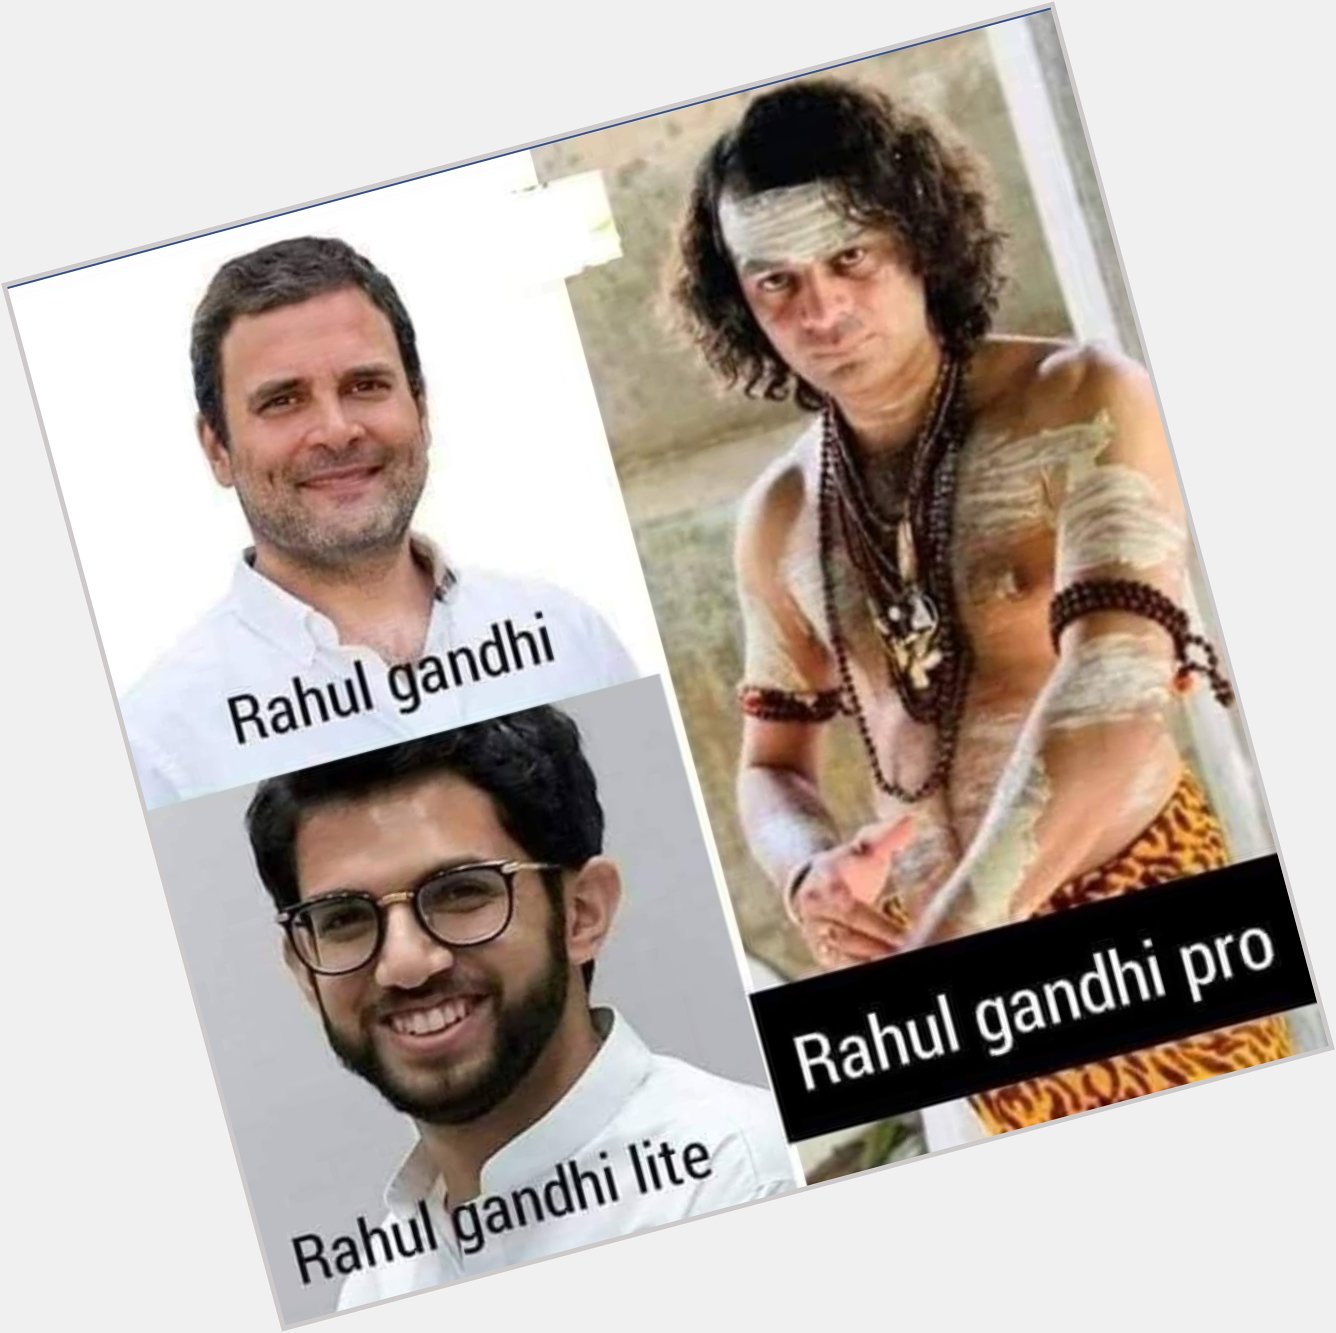  Happy birthday to Rahul Gandhi Lite 